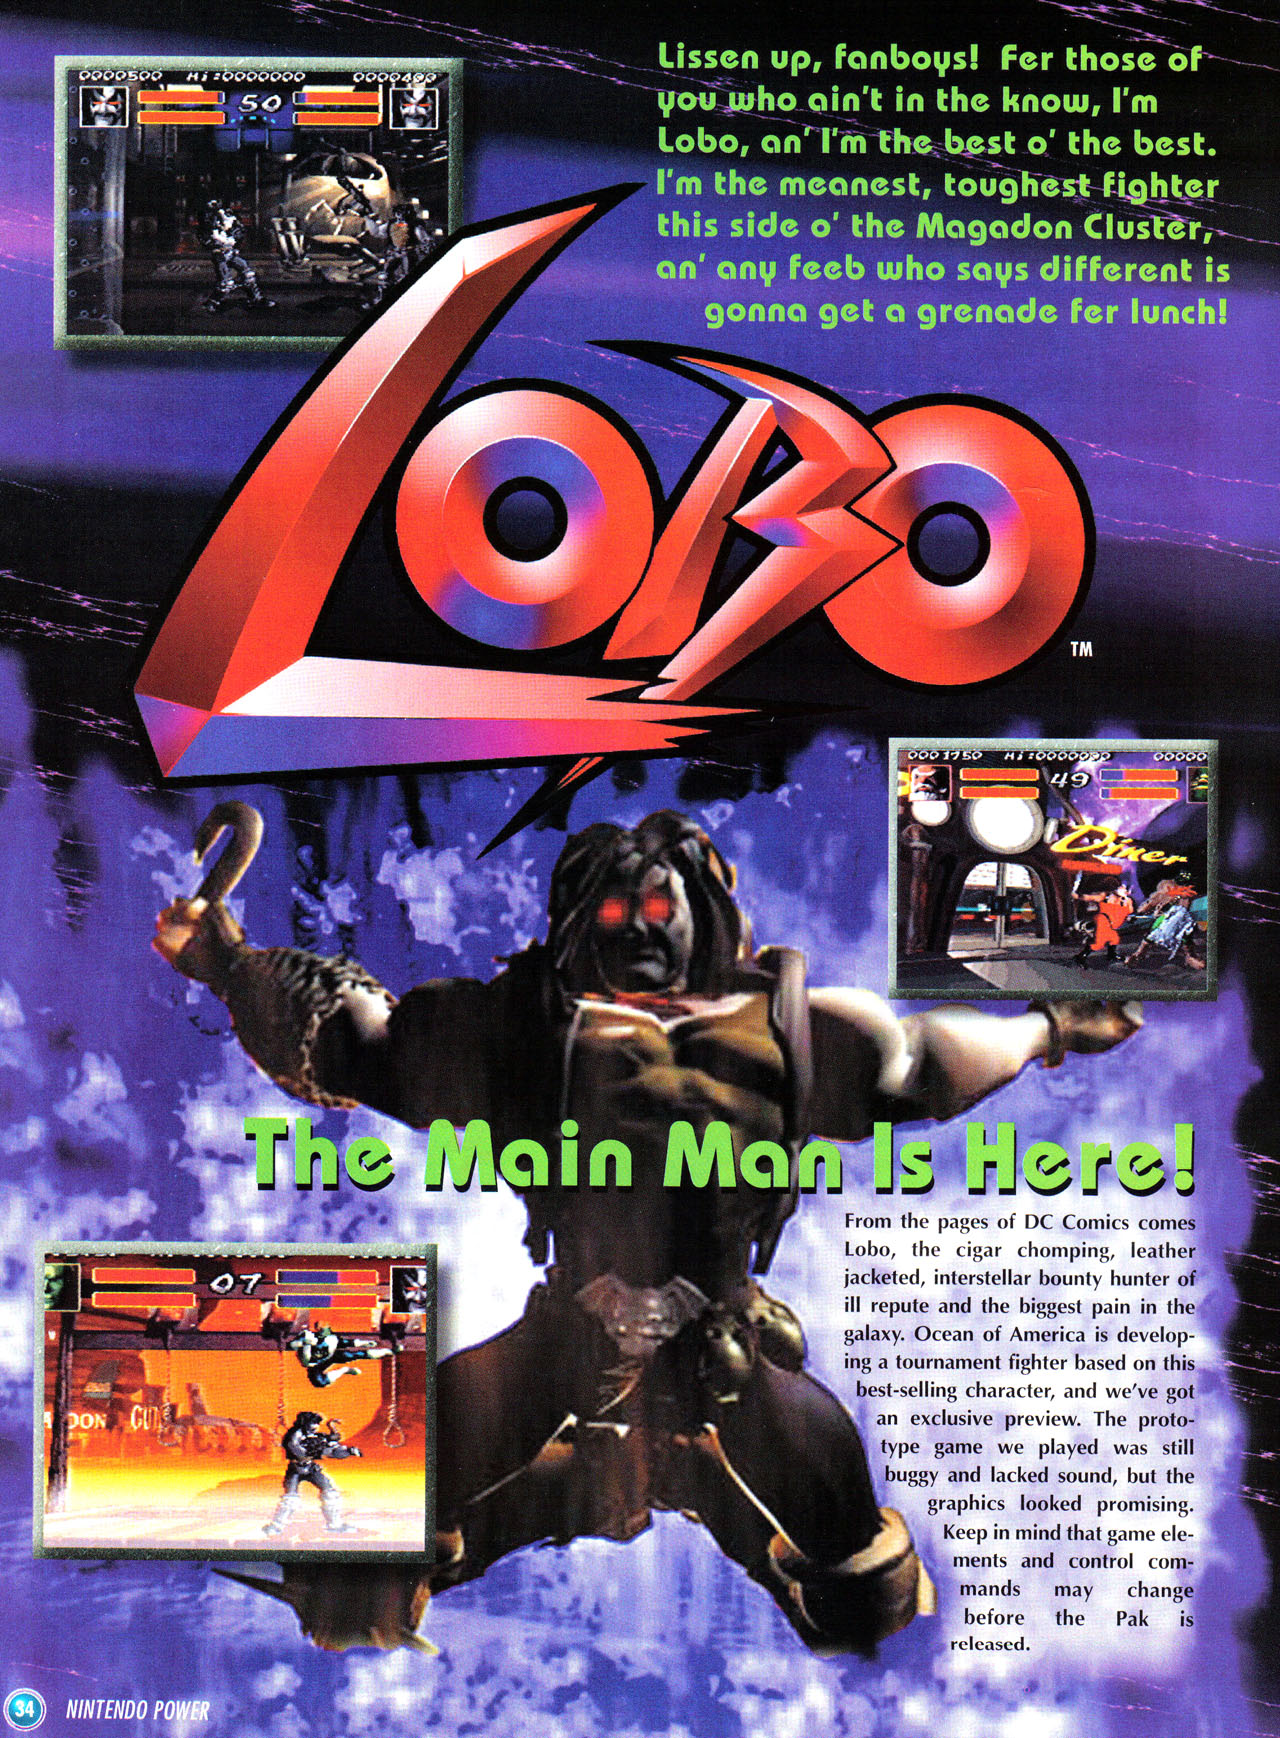 Lobo SNES Nintendo Power Page 34.jpg